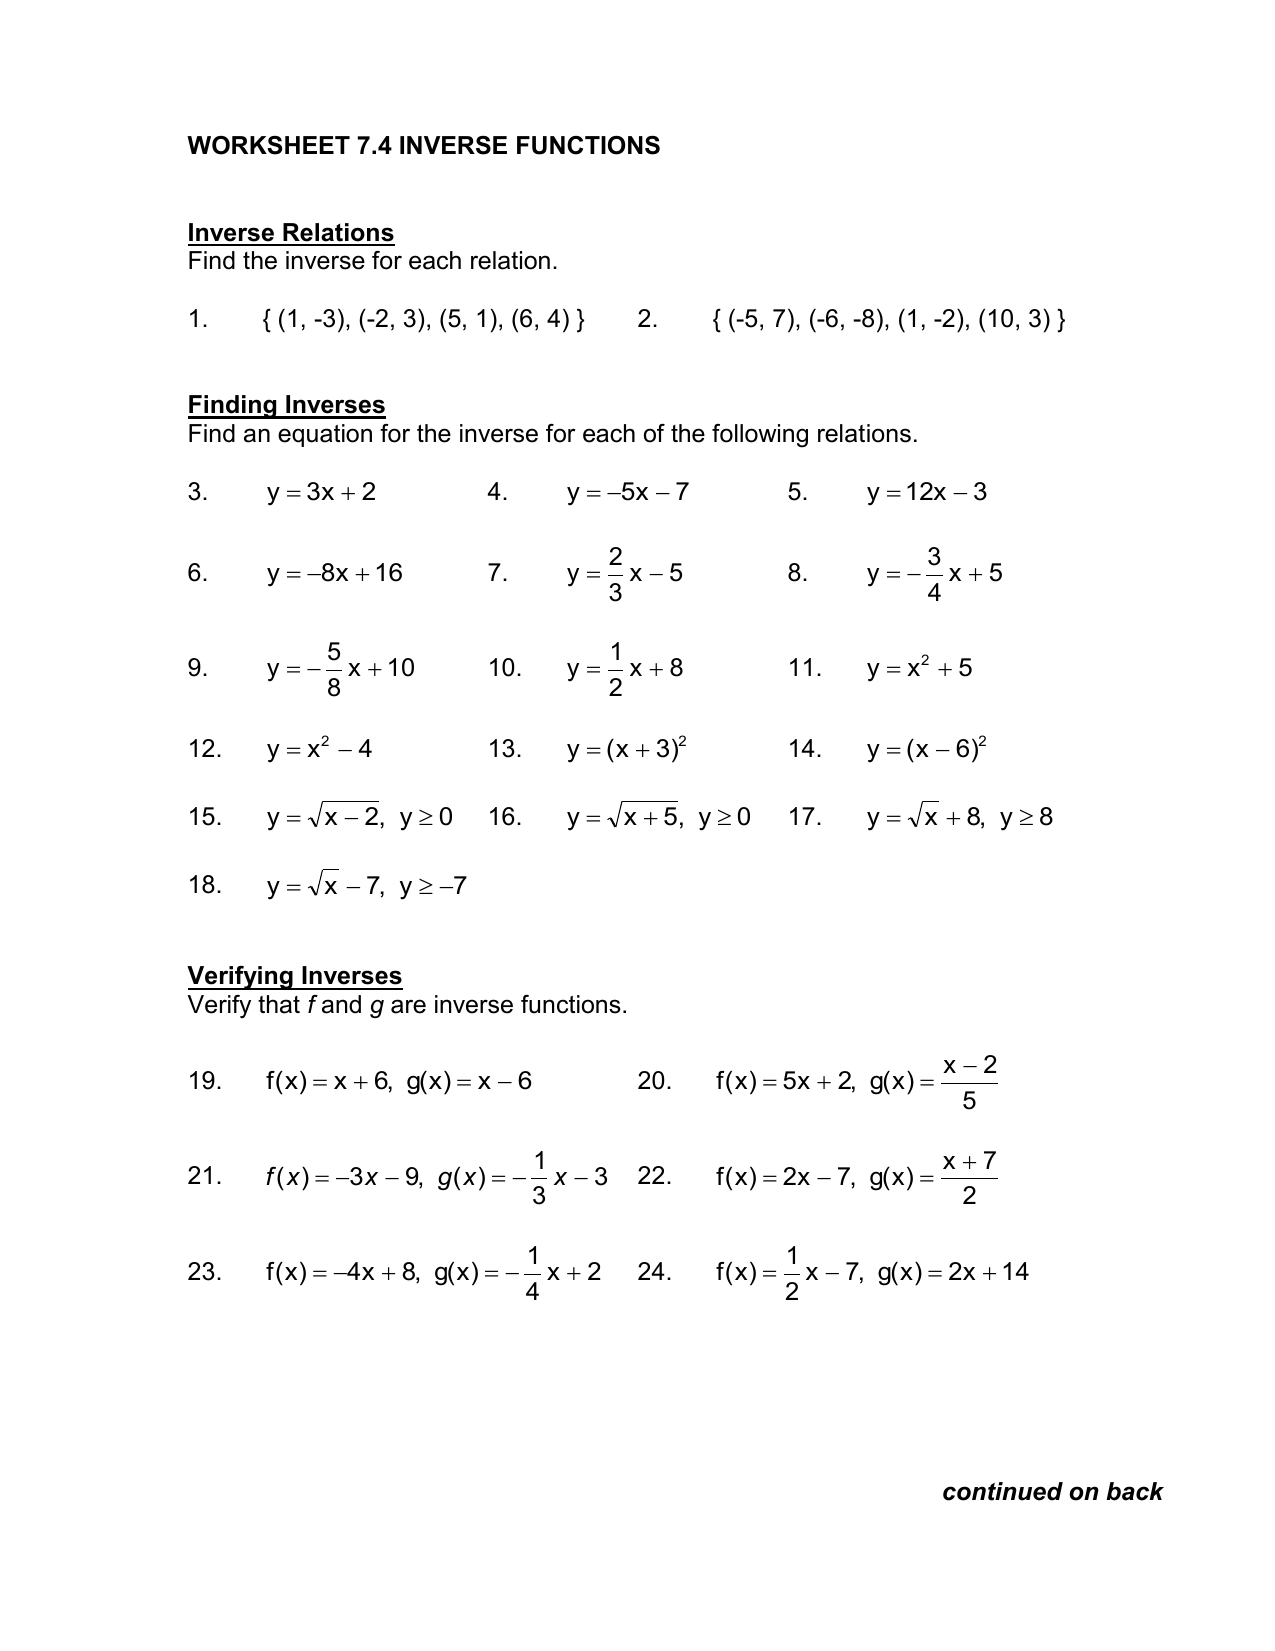 worksheet 21 21 inverse functions Regarding Functions And Relations Worksheet